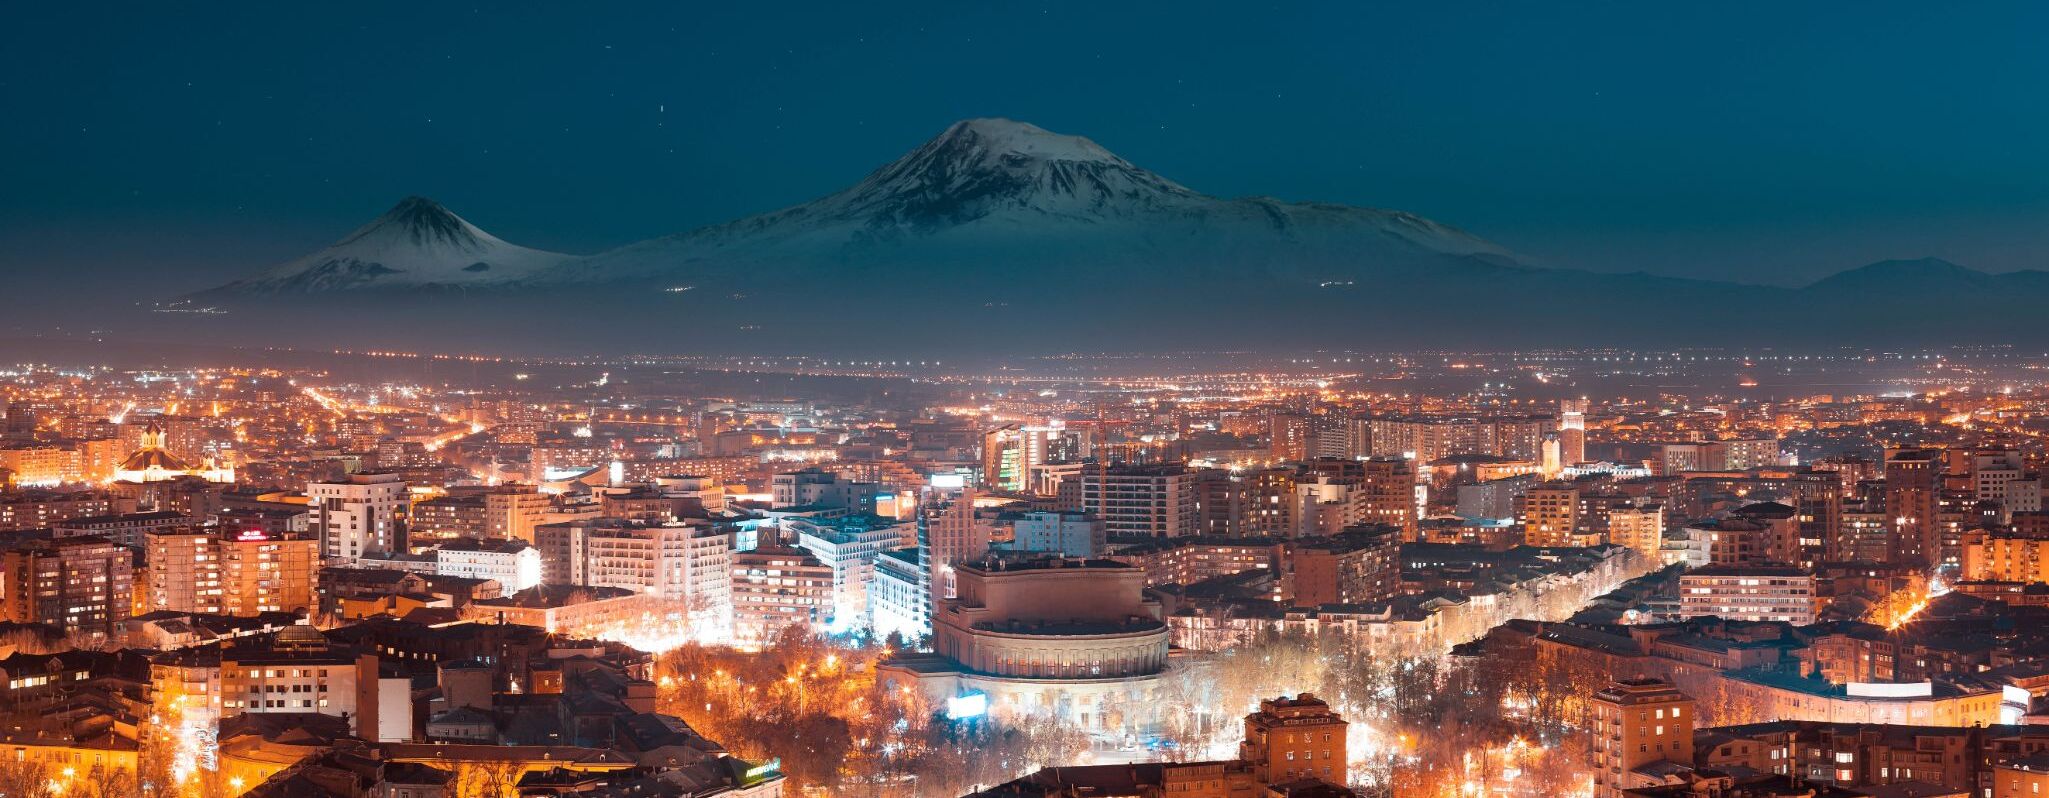 1-Day Armenia: Yerevan City tour